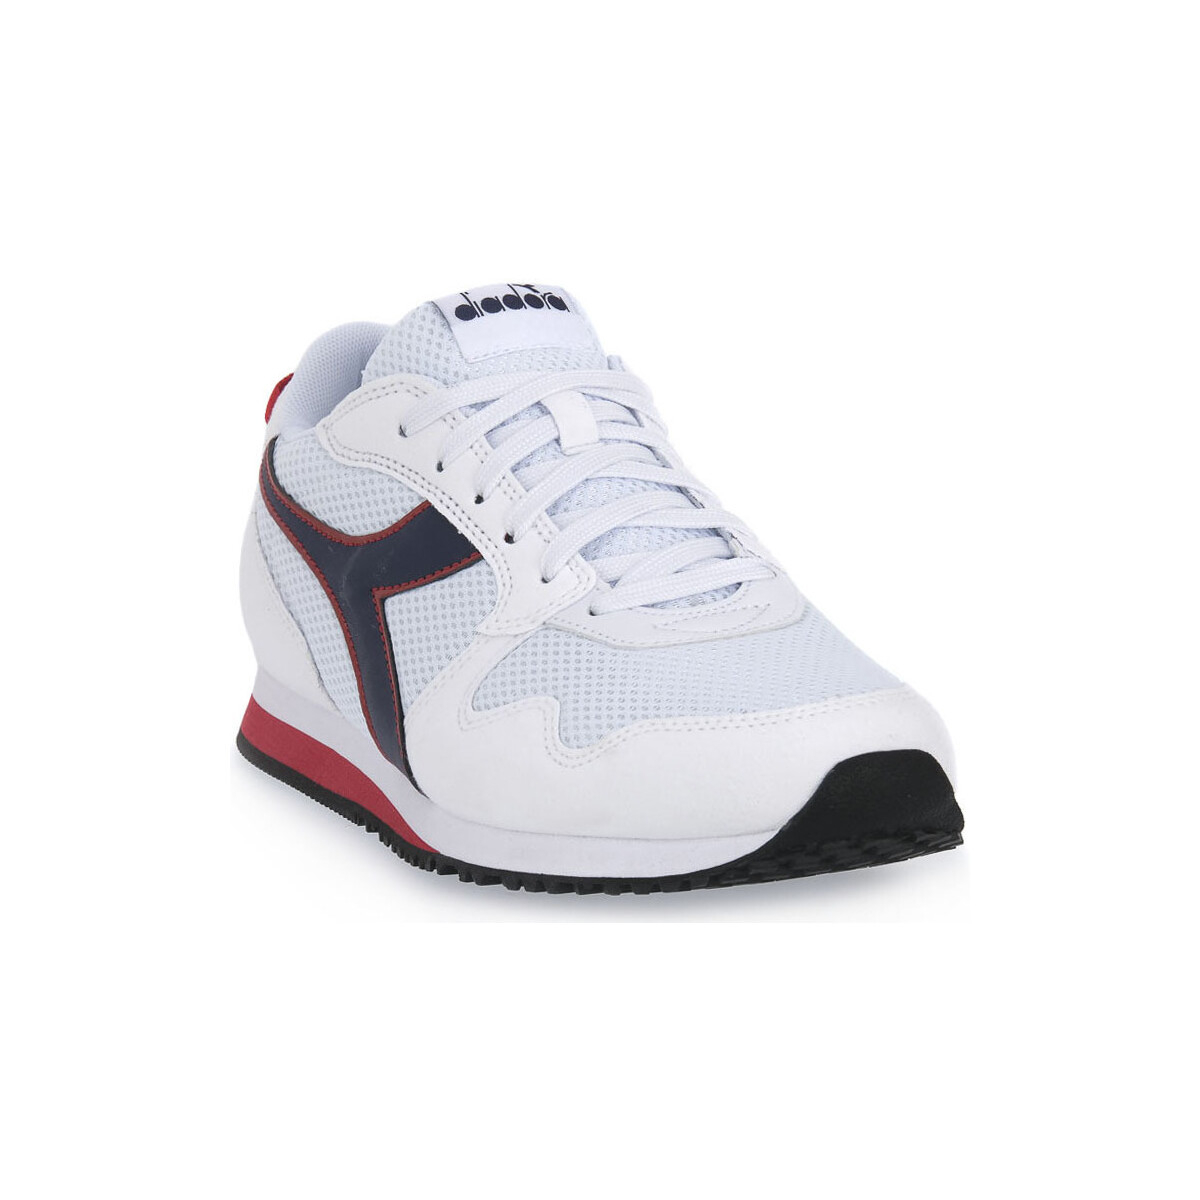 Παπούτσια Άνδρας Τρέξιμο Diadora C0178 SKYLER Άσπρο